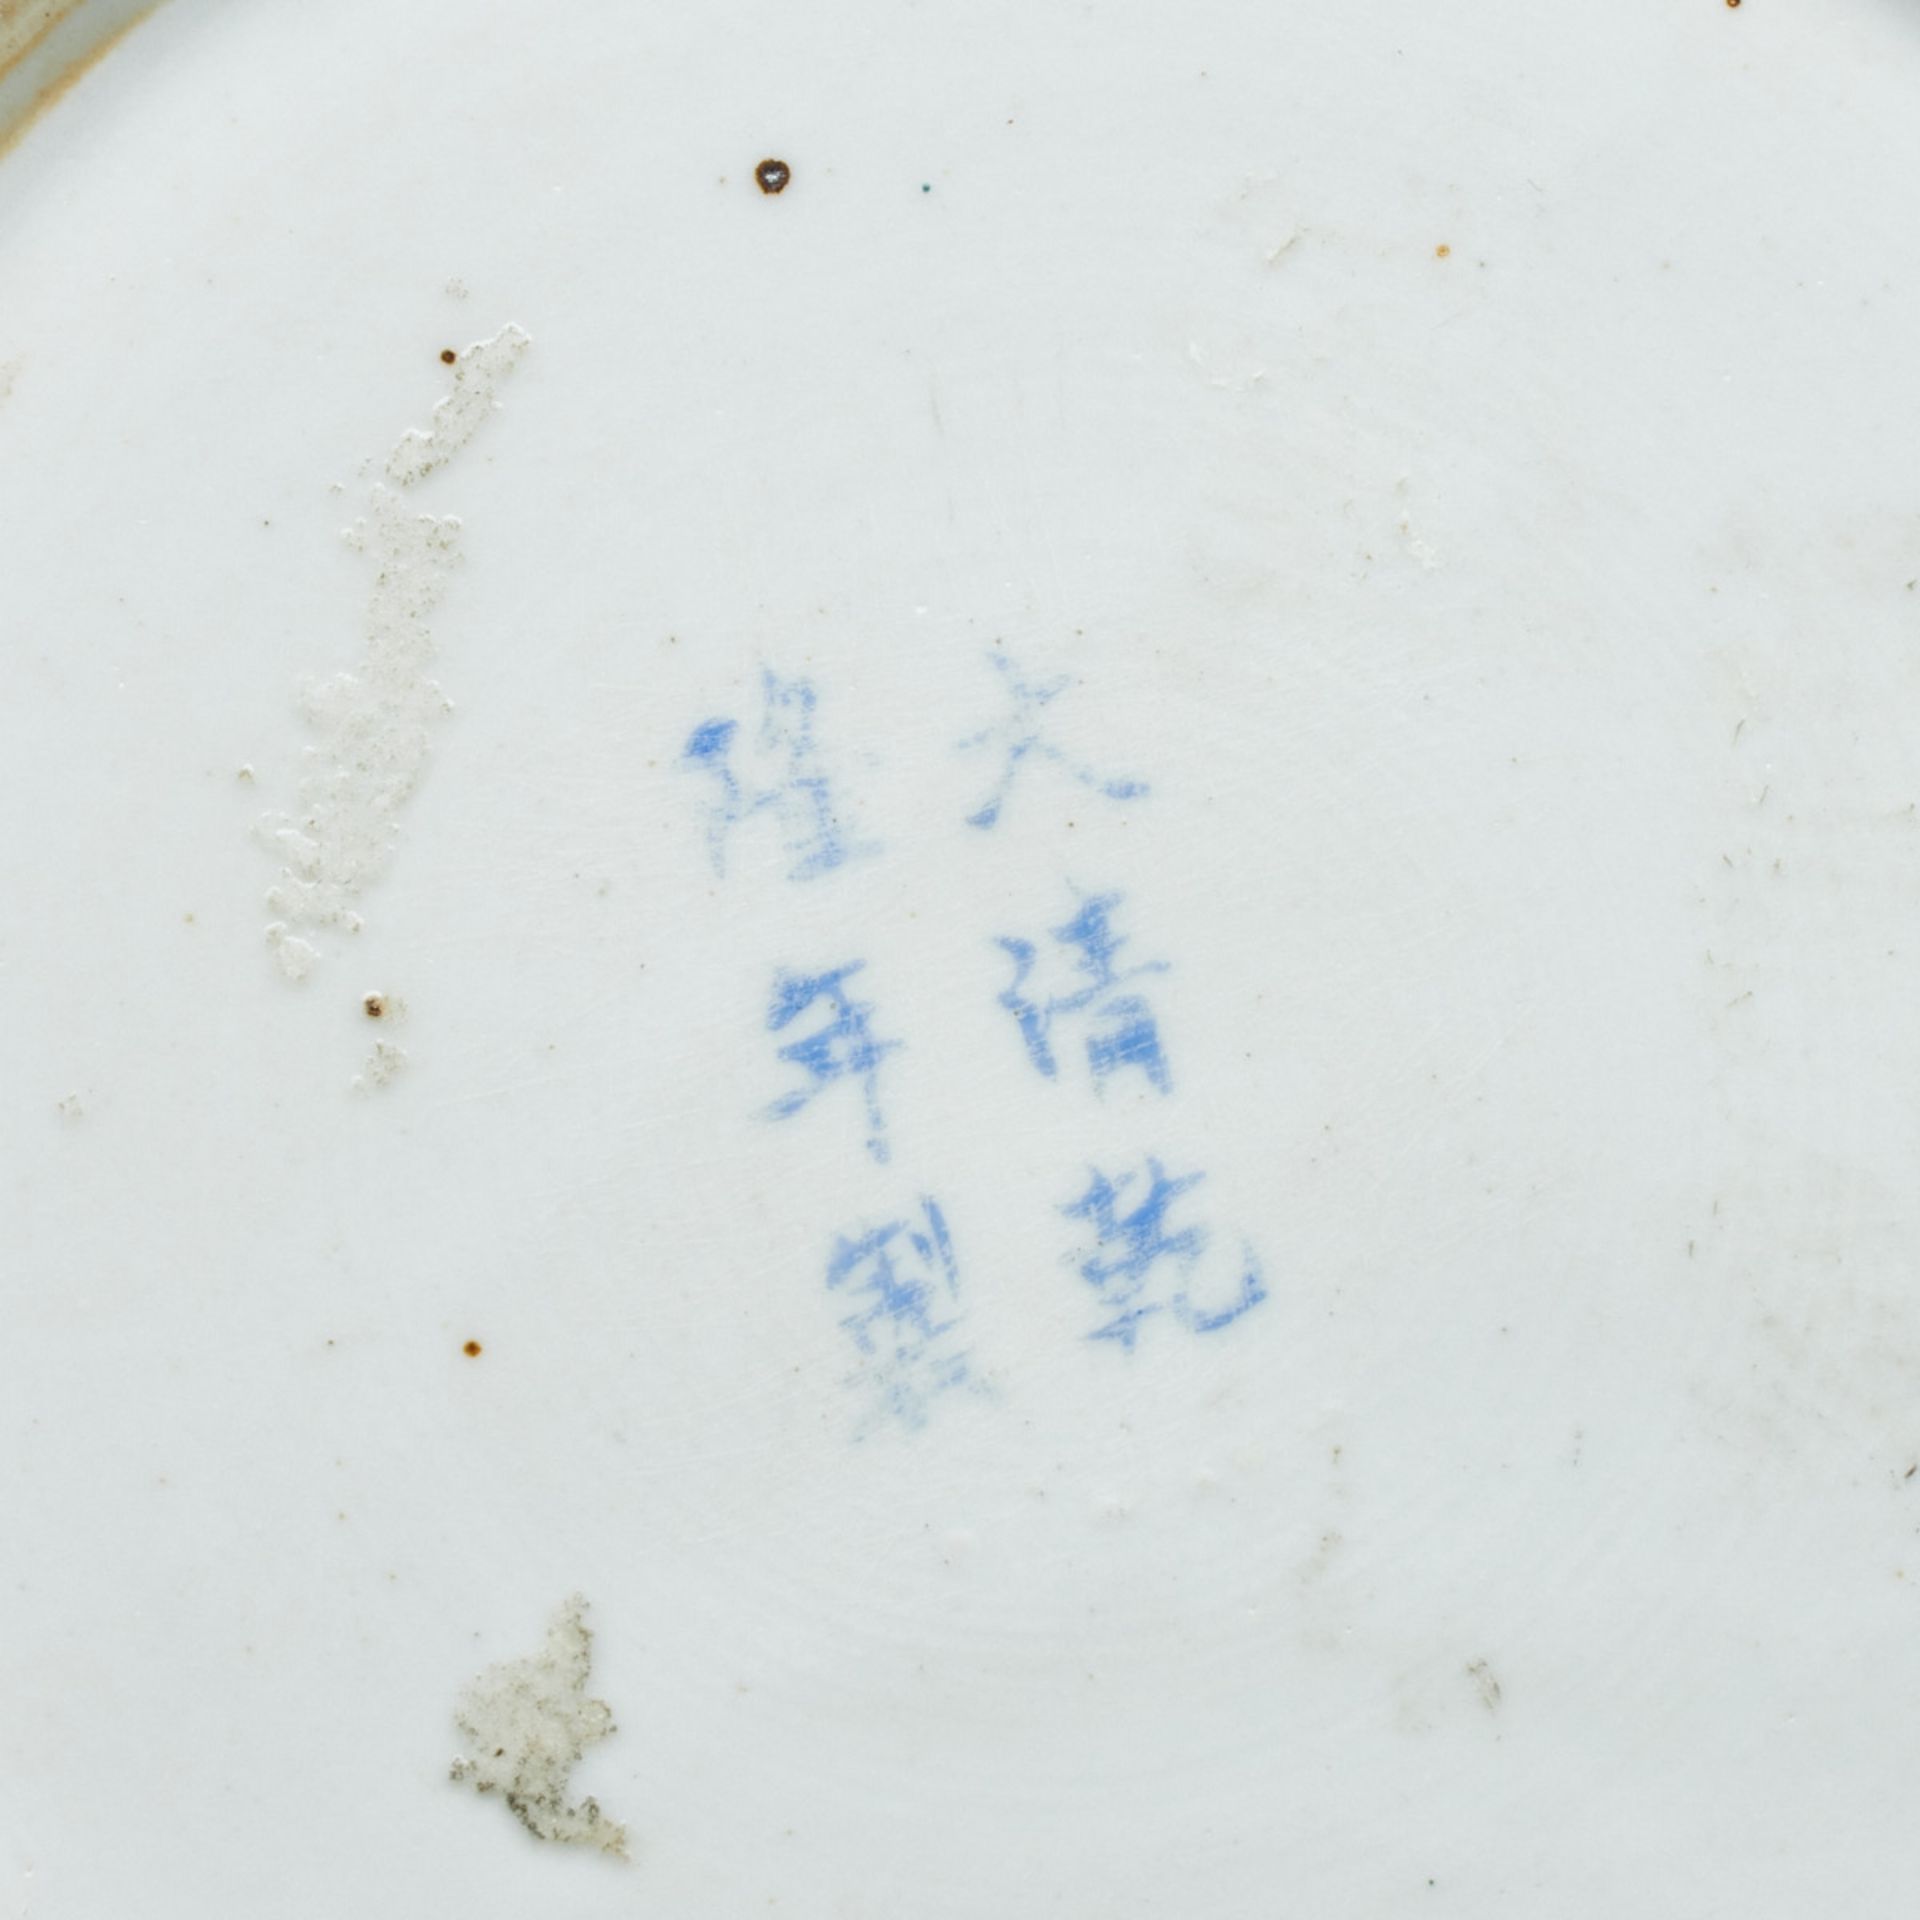 Flaschenvase mit Neunpfirsich-Dekor, China, Qing-Dynastie, Ende 19. Jahrhundert - Image 2 of 2